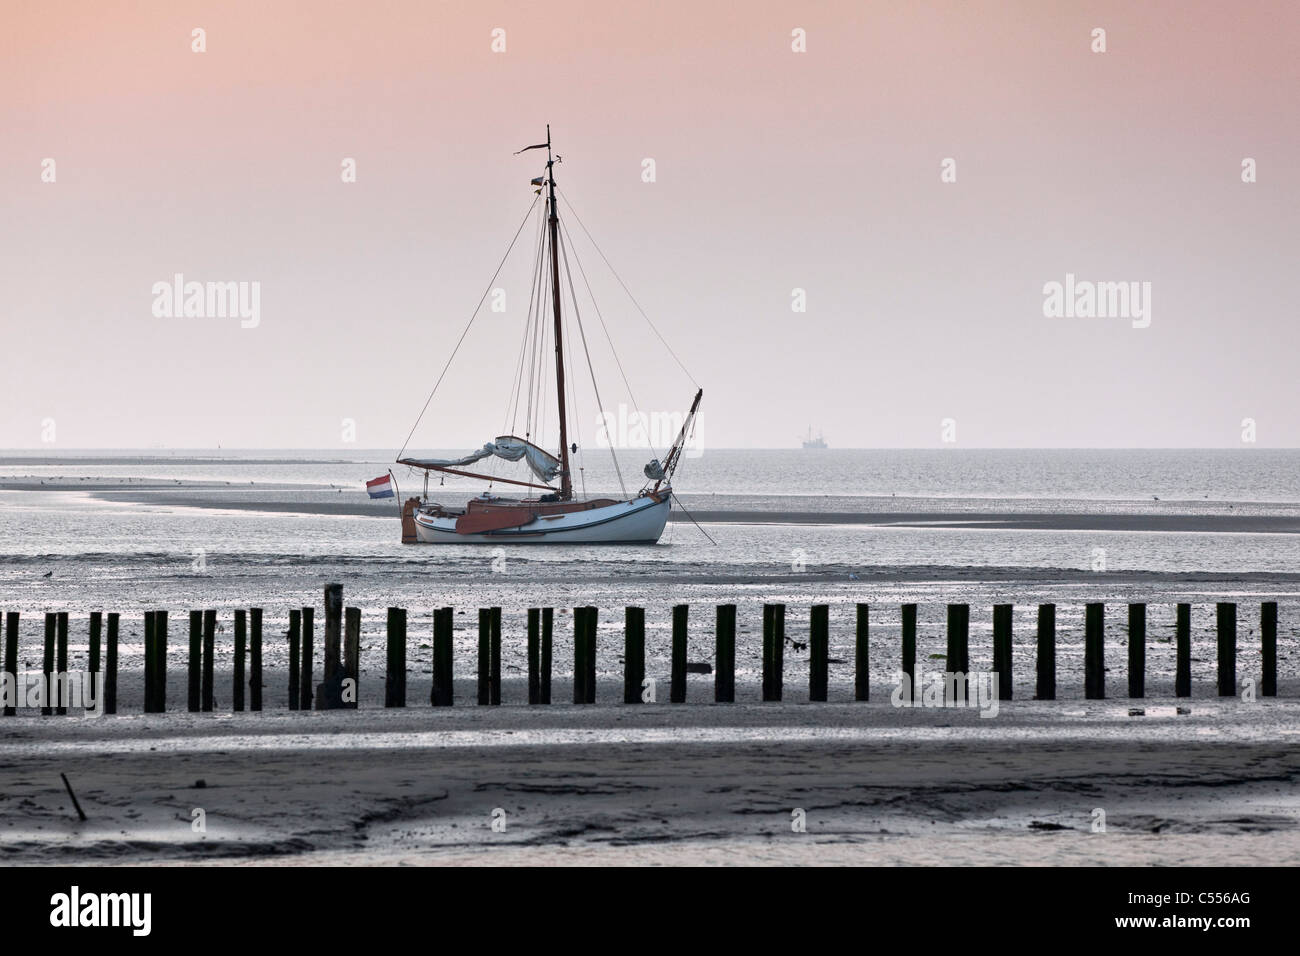 Los Países Bajos, nes, isla de Ameland, perteneciente a las islas del Mar de Wadden. Velero sobre barro plana en el puerto. Foto de stock